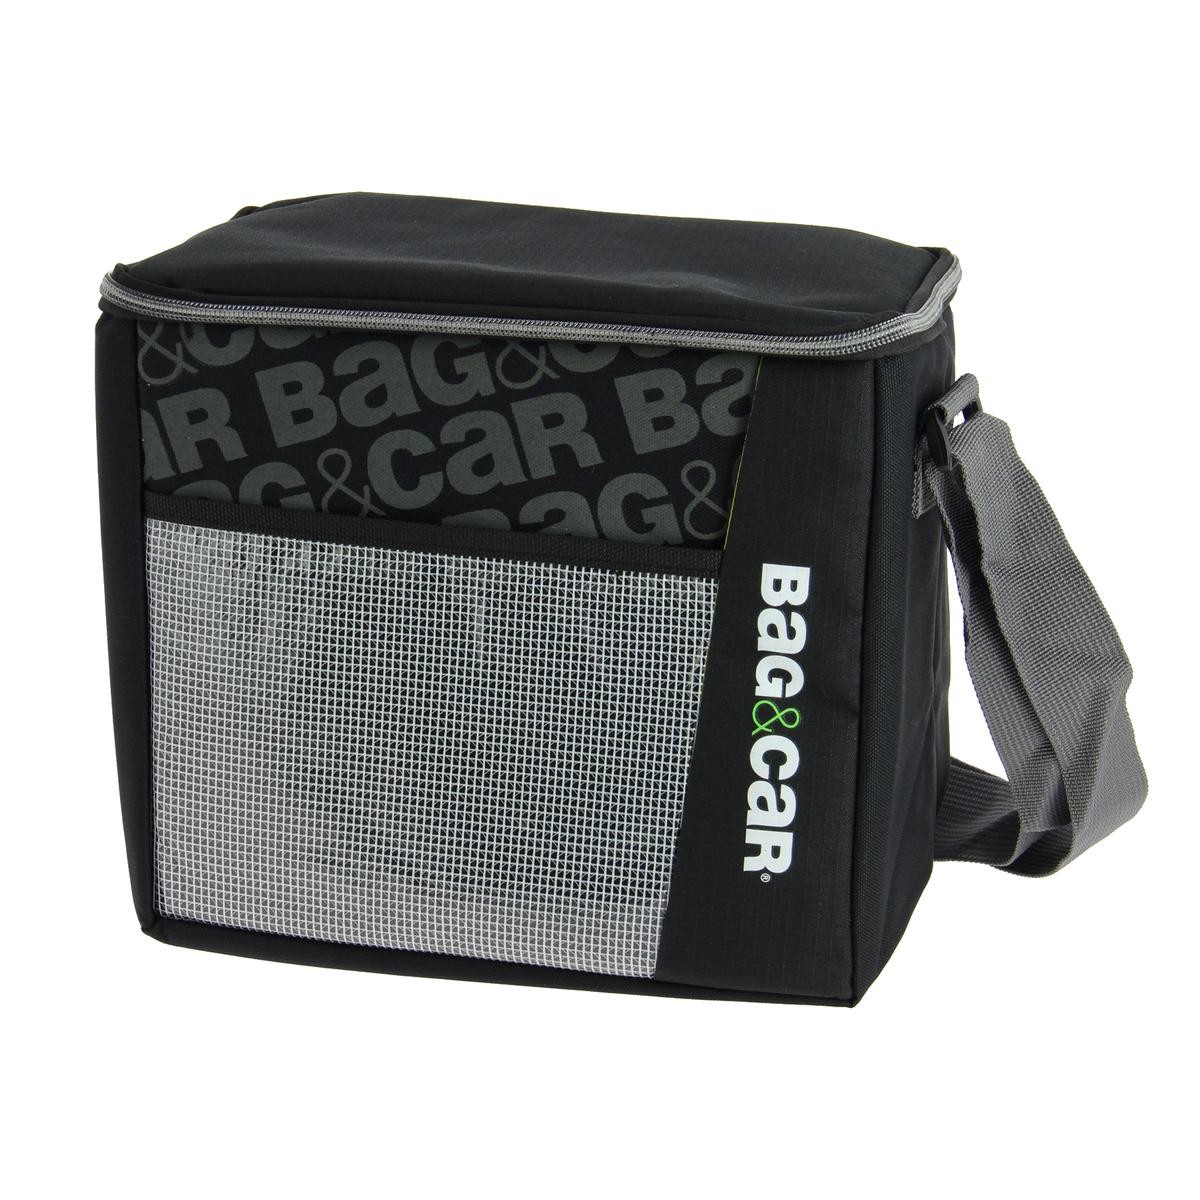 Cooler lunch bag BAG&CAR 168002